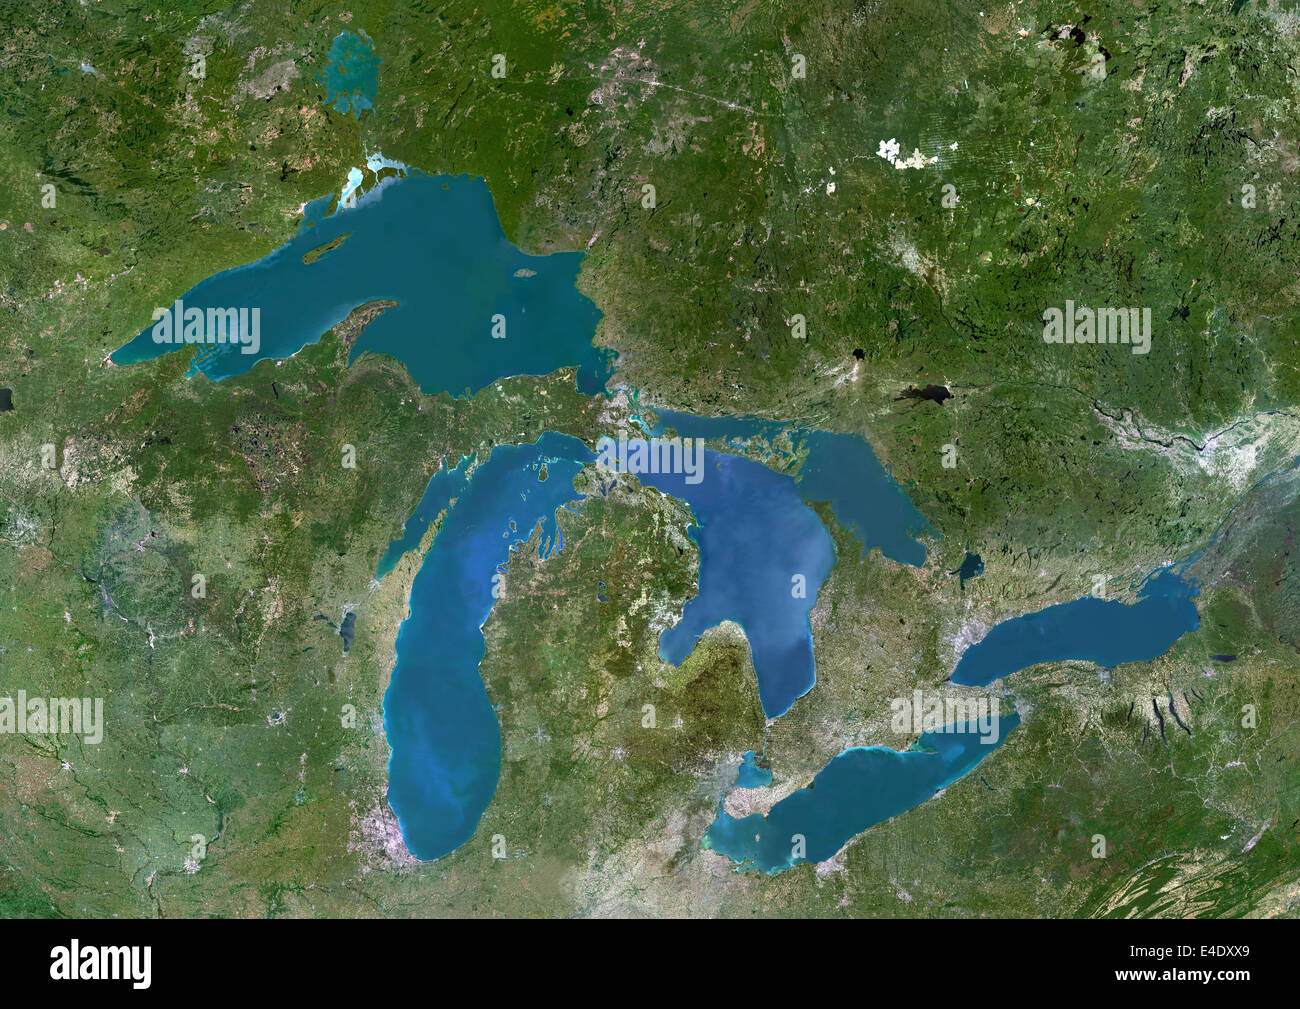 Водная система озер. Великие озёра озёра Северной Америки. Система великих озер Северной Америки. 5 Великих озер Северной Америки. Великие озера (5 озер.